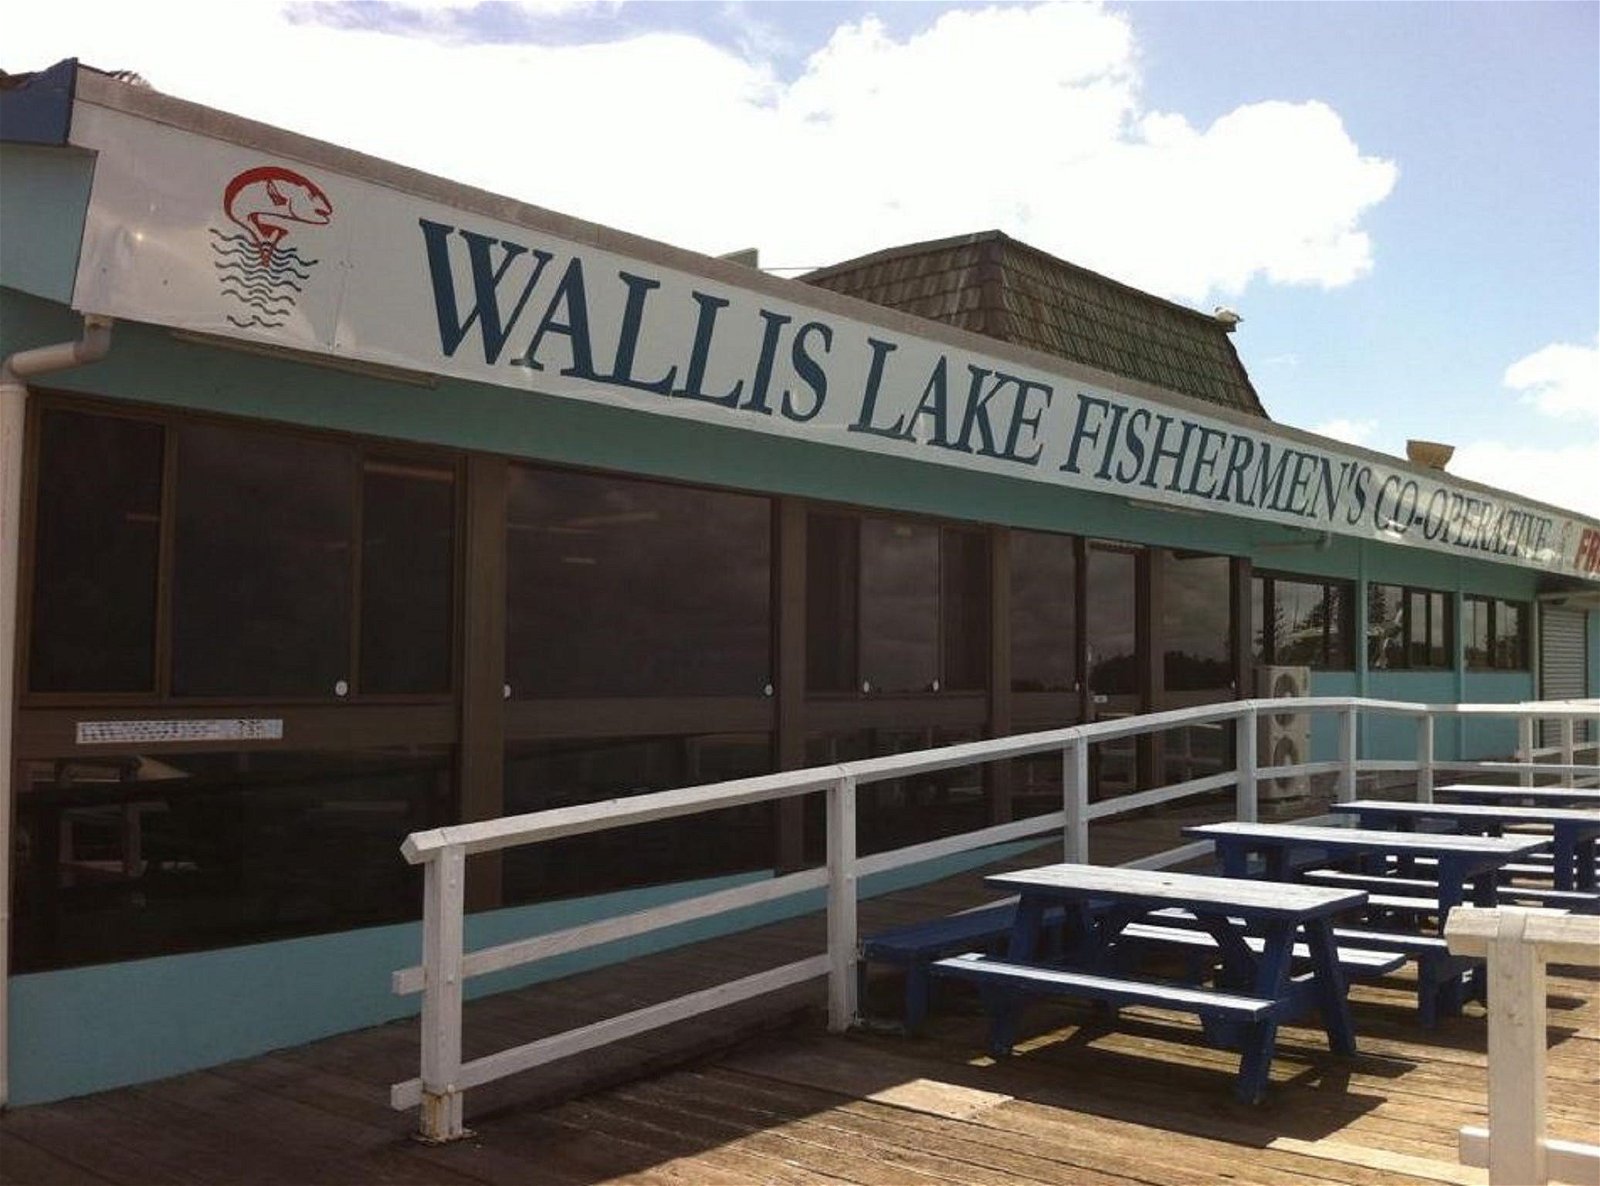 Wallis Lake Fishermans Co-op - Broome Tourism